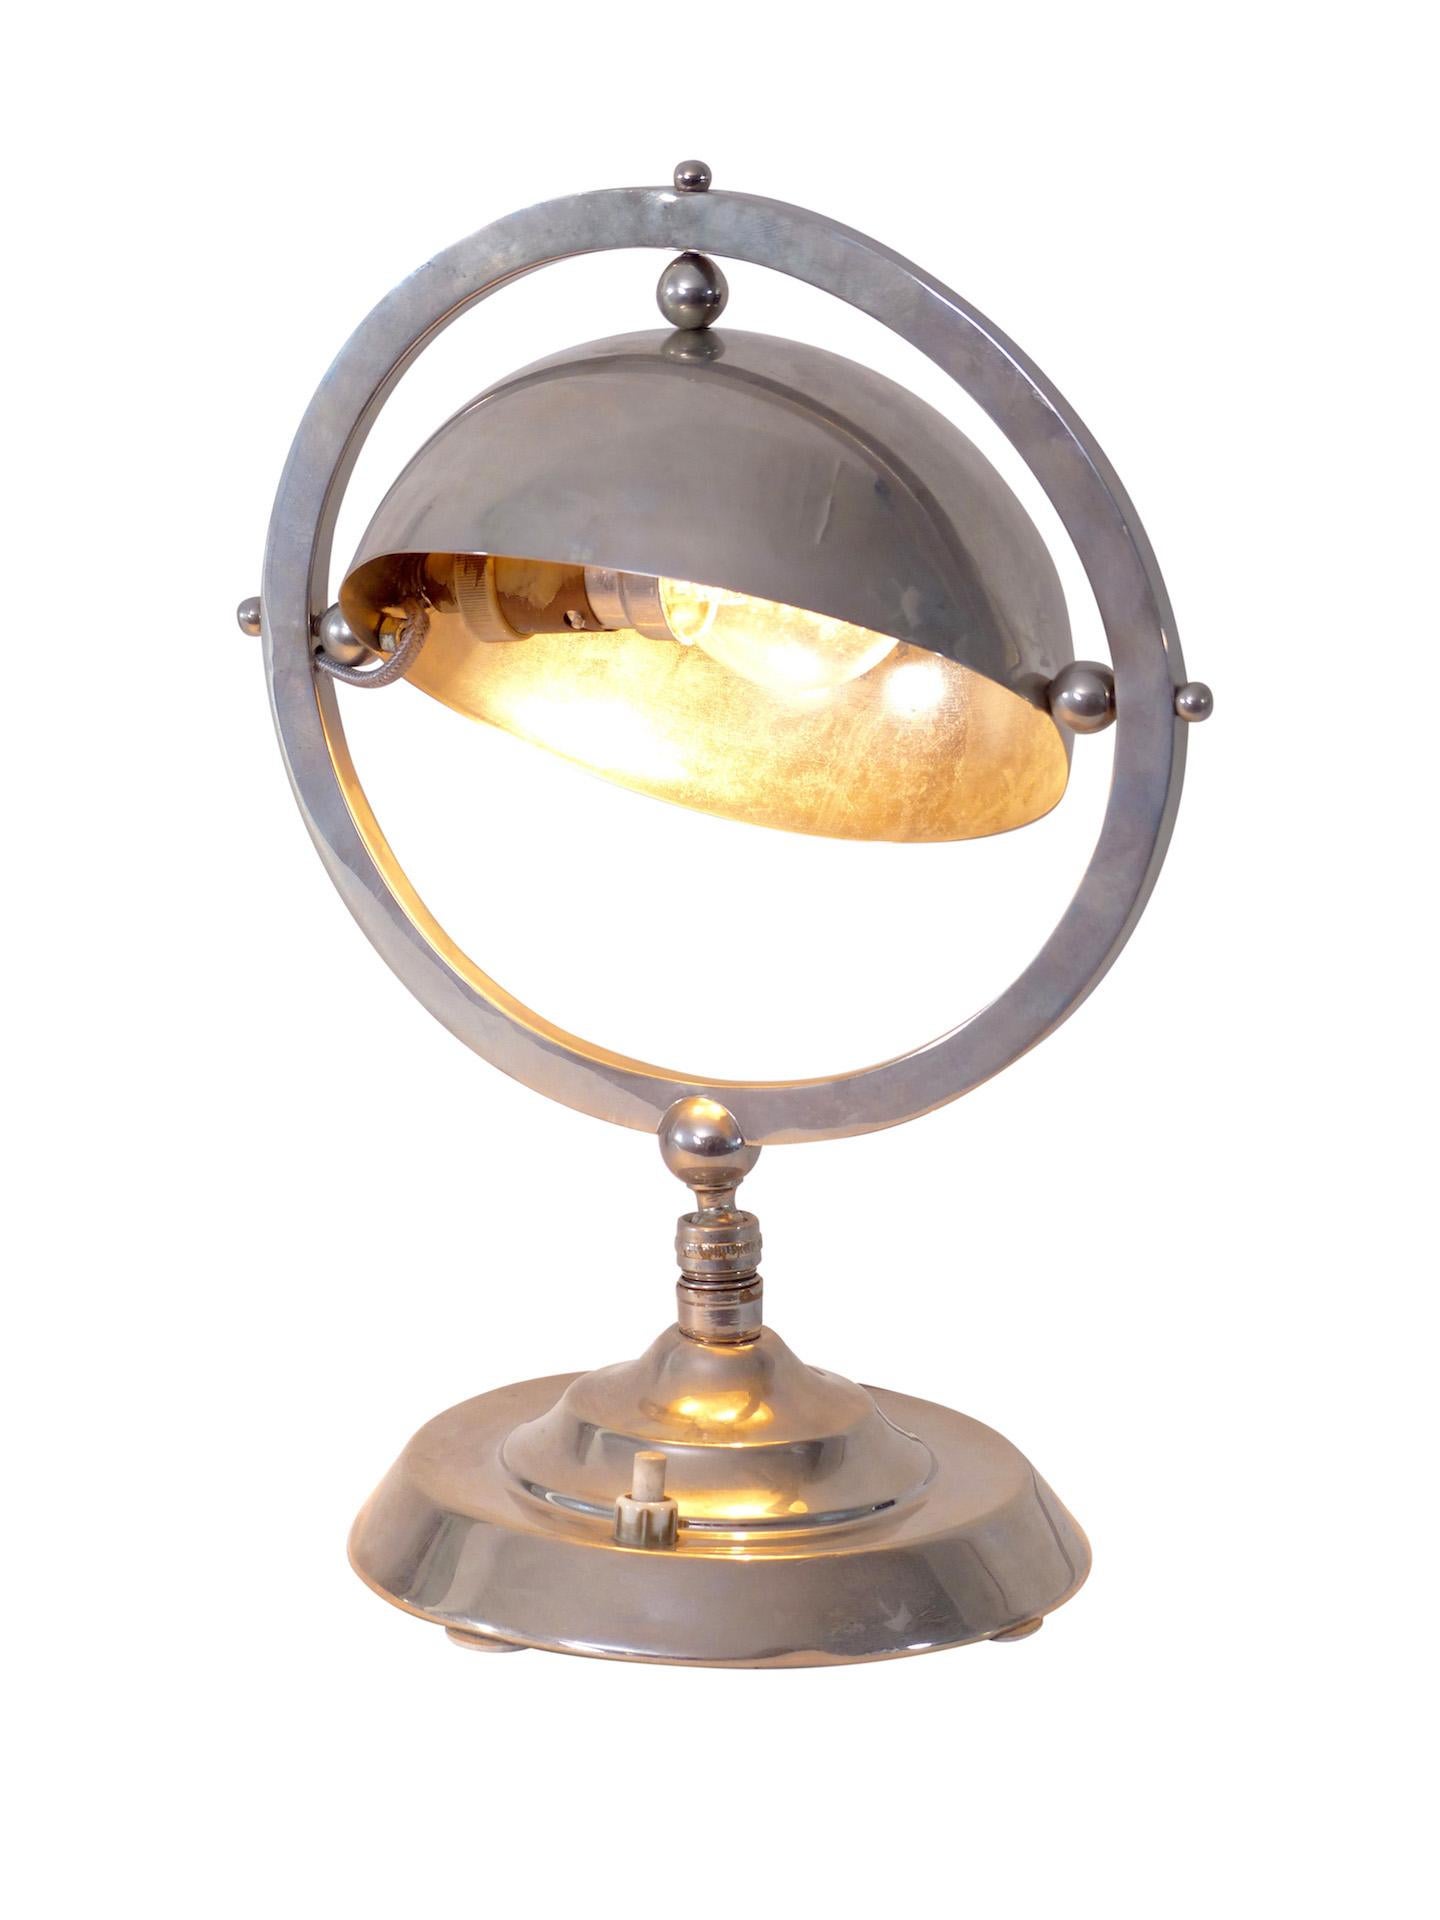 Petite lampe de table
Original Art déco, France, années 1930.

Design/One : hémisphère dans un cercle
Métal avec patine d'origine (juste nettoyé, pas poli).

Dimensions :
Largeur 21 cm
Hauteur 27 cm
Profondeur 15 cm.